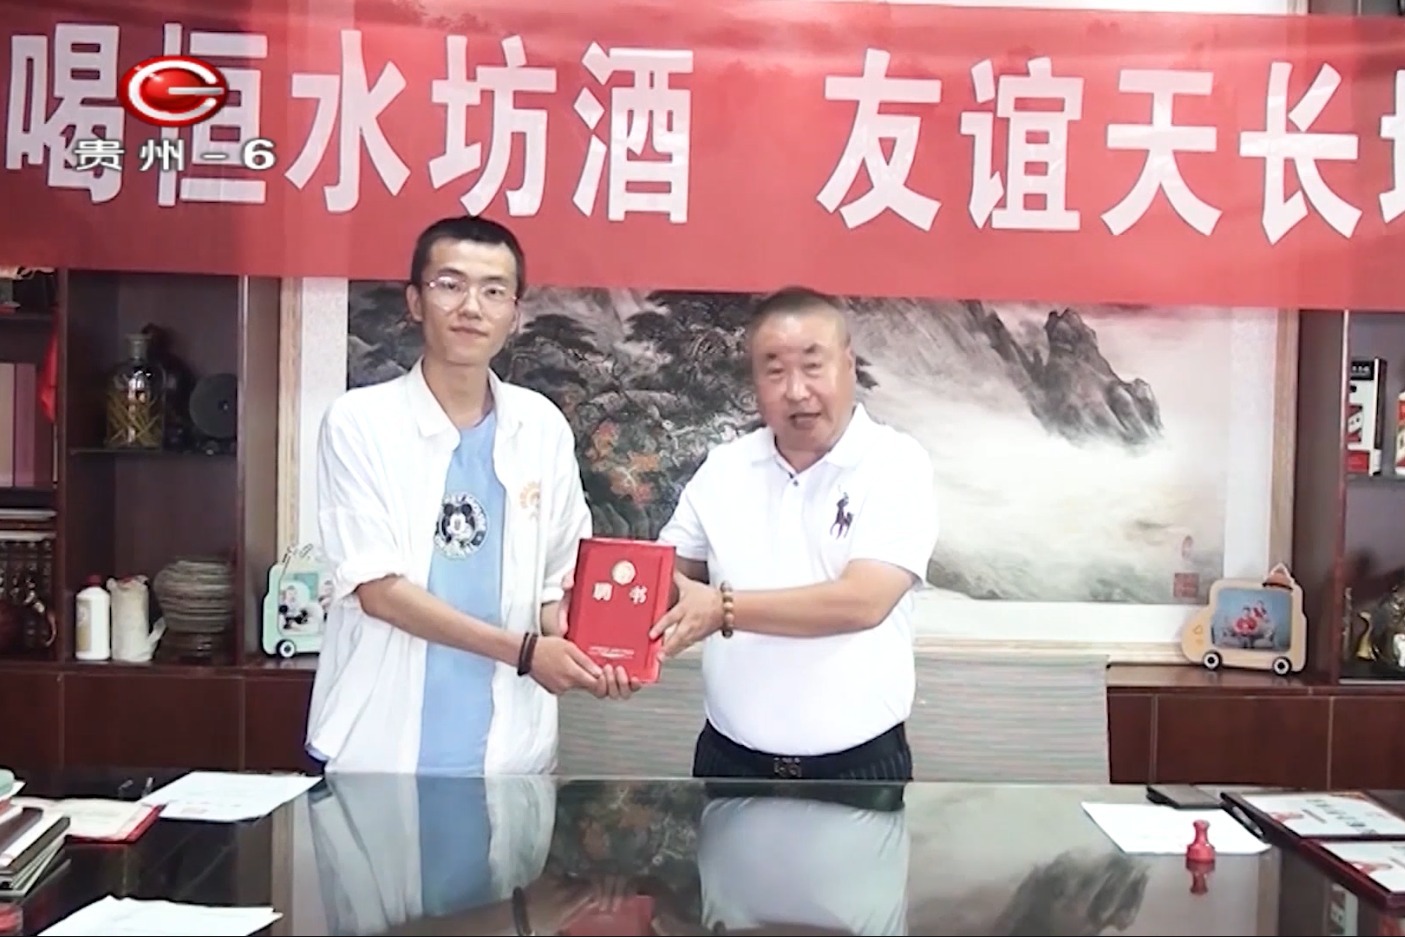 作家洪绍乾为《恒水坊》代言签约仪式在贵州广播电视台6频道播出。